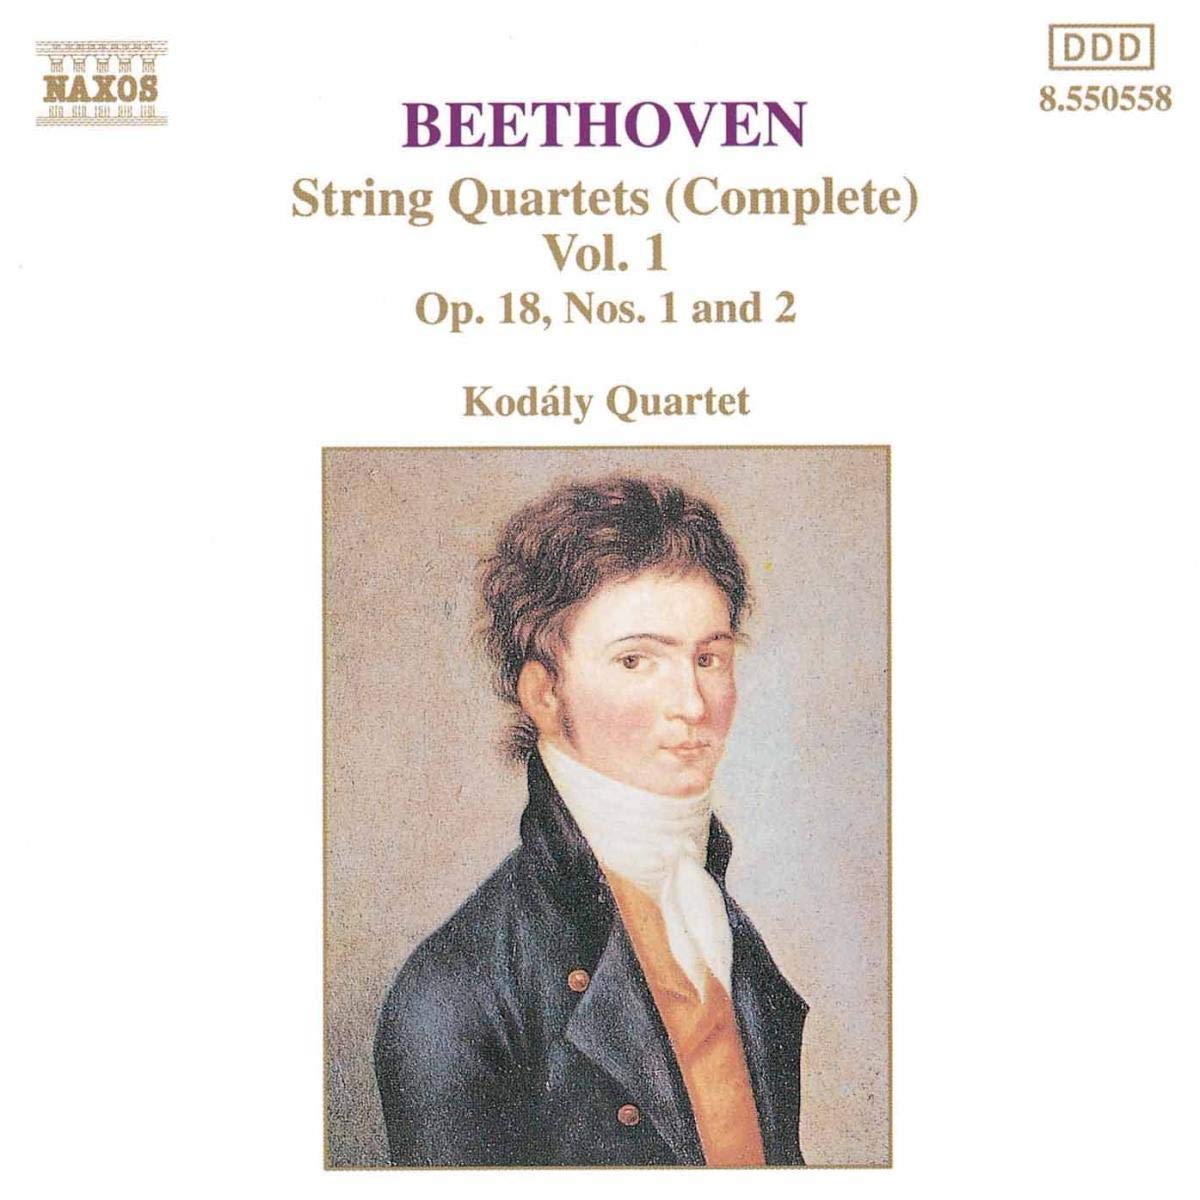 BEETHOVEN: String Quartets vol. 1